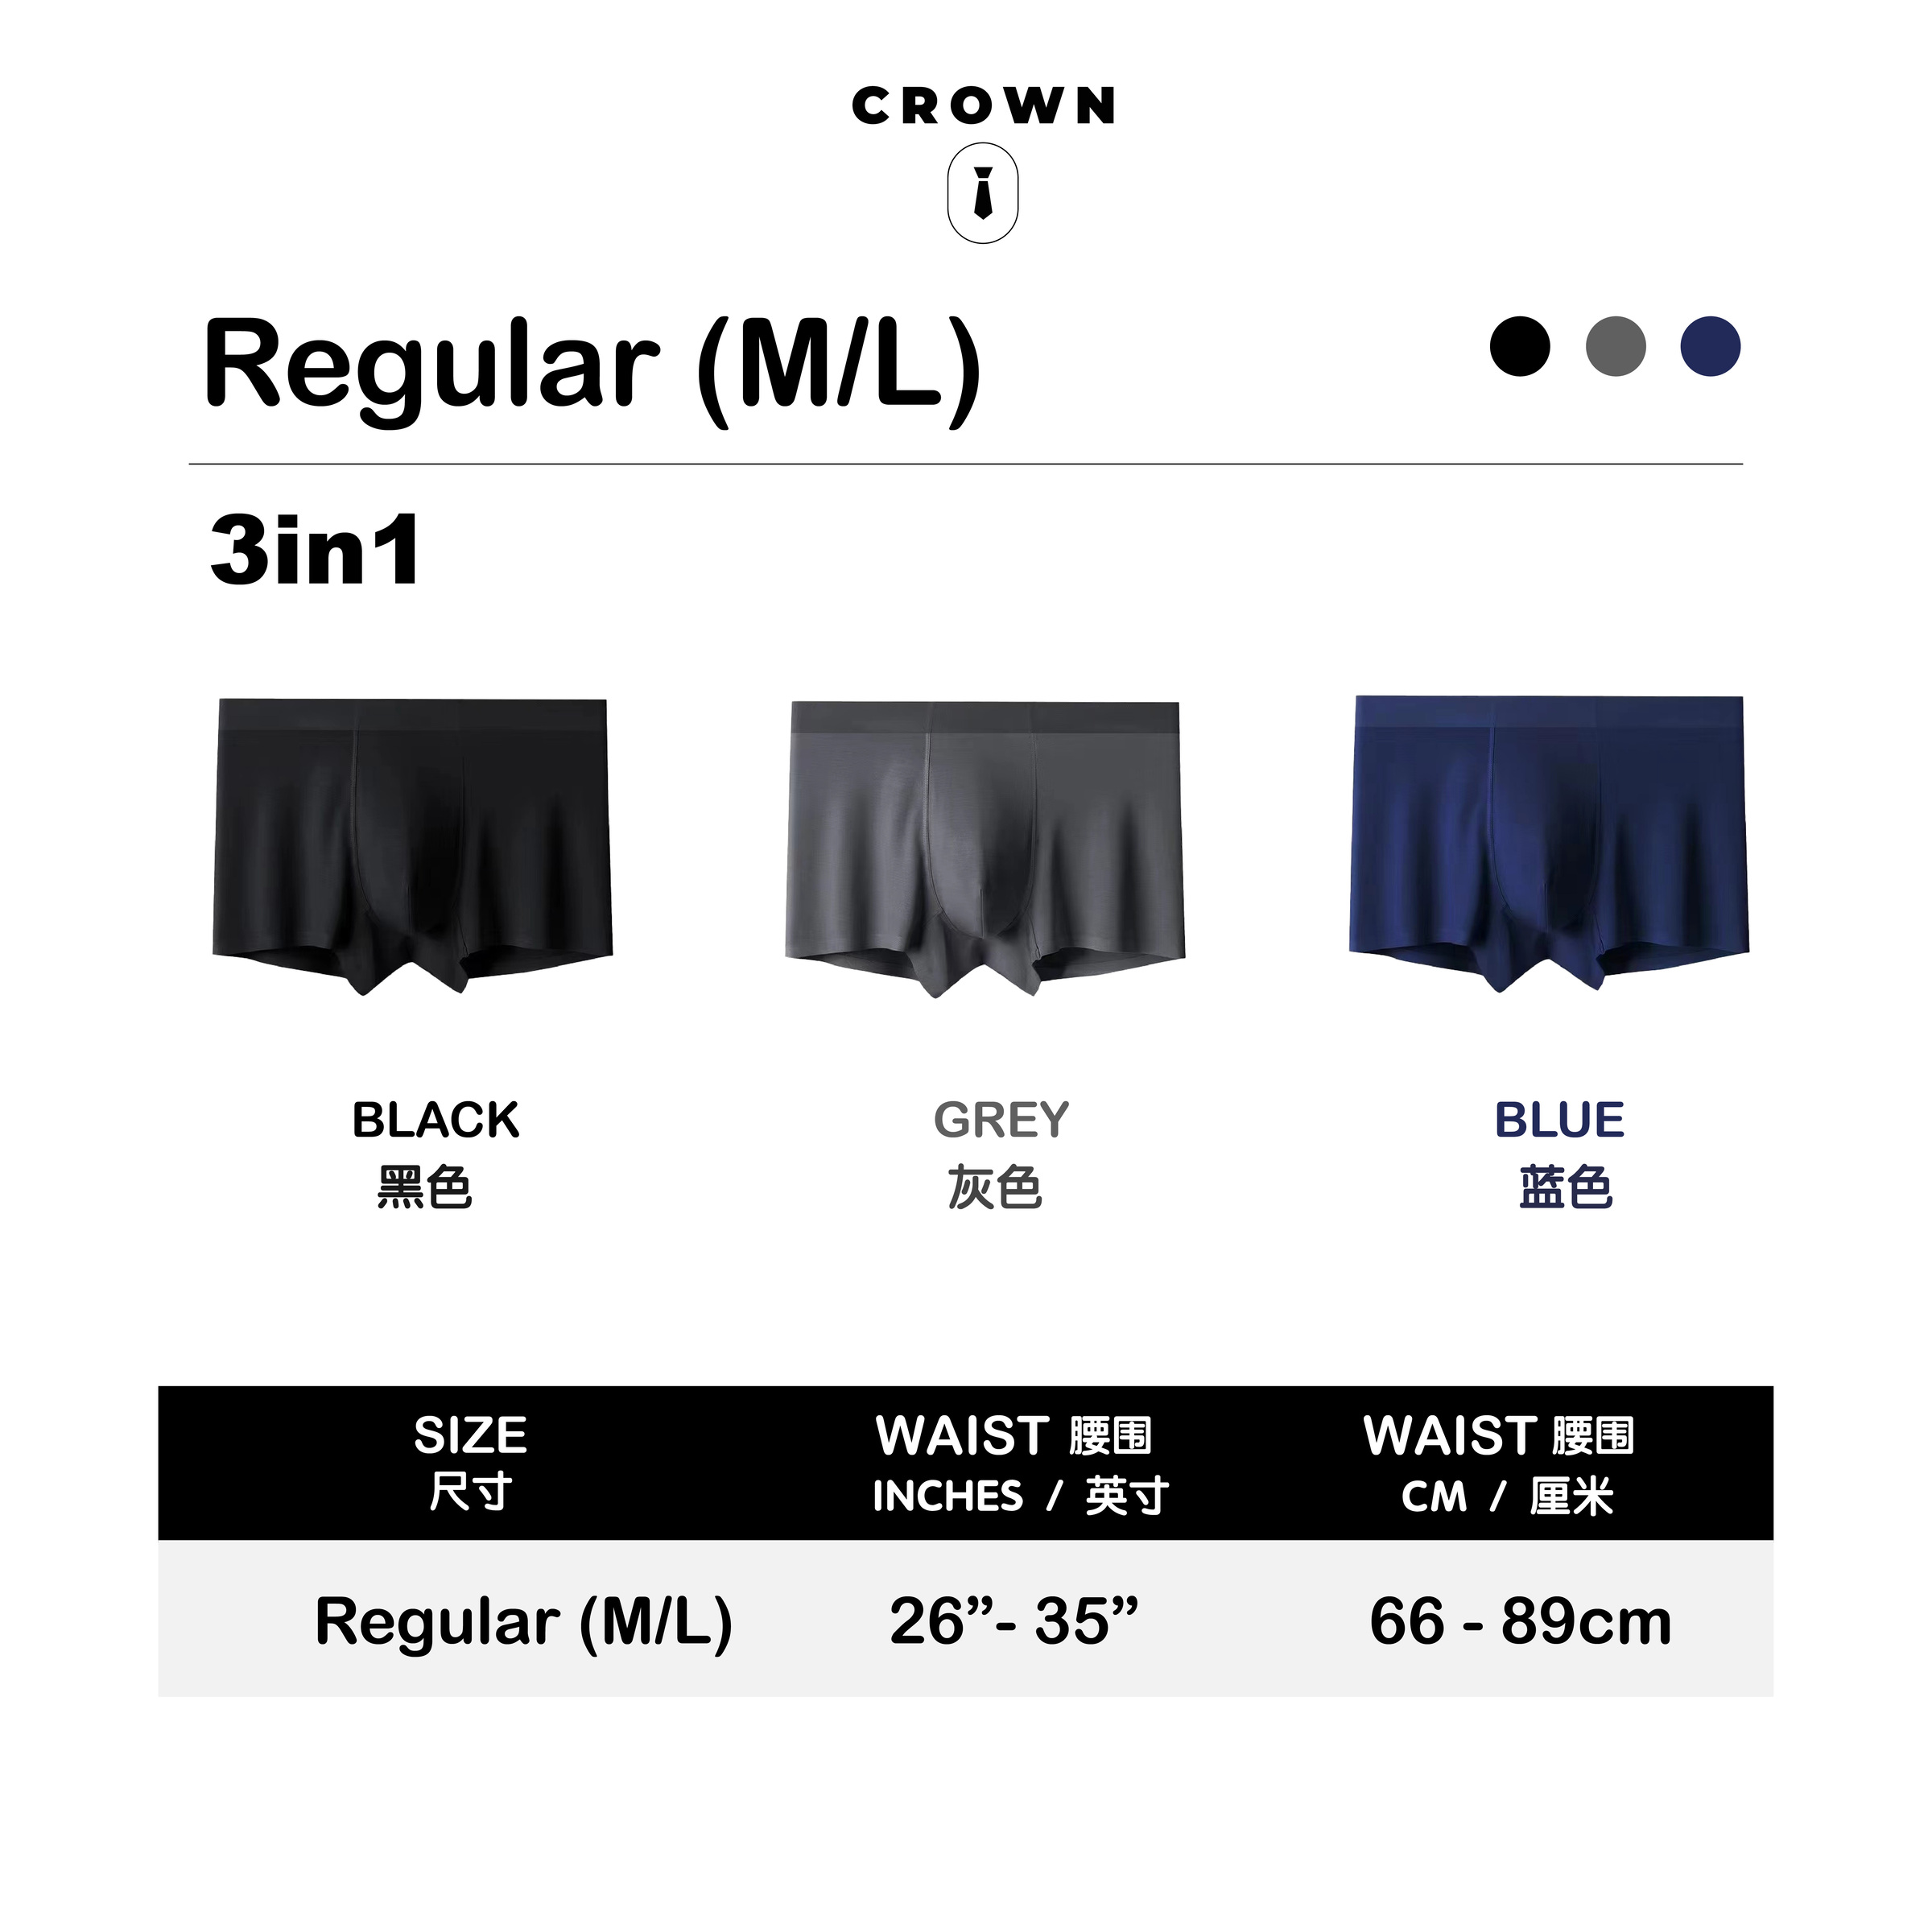 Crown Black Seamless Bra / Crown 低調黑色系– Crownglobal